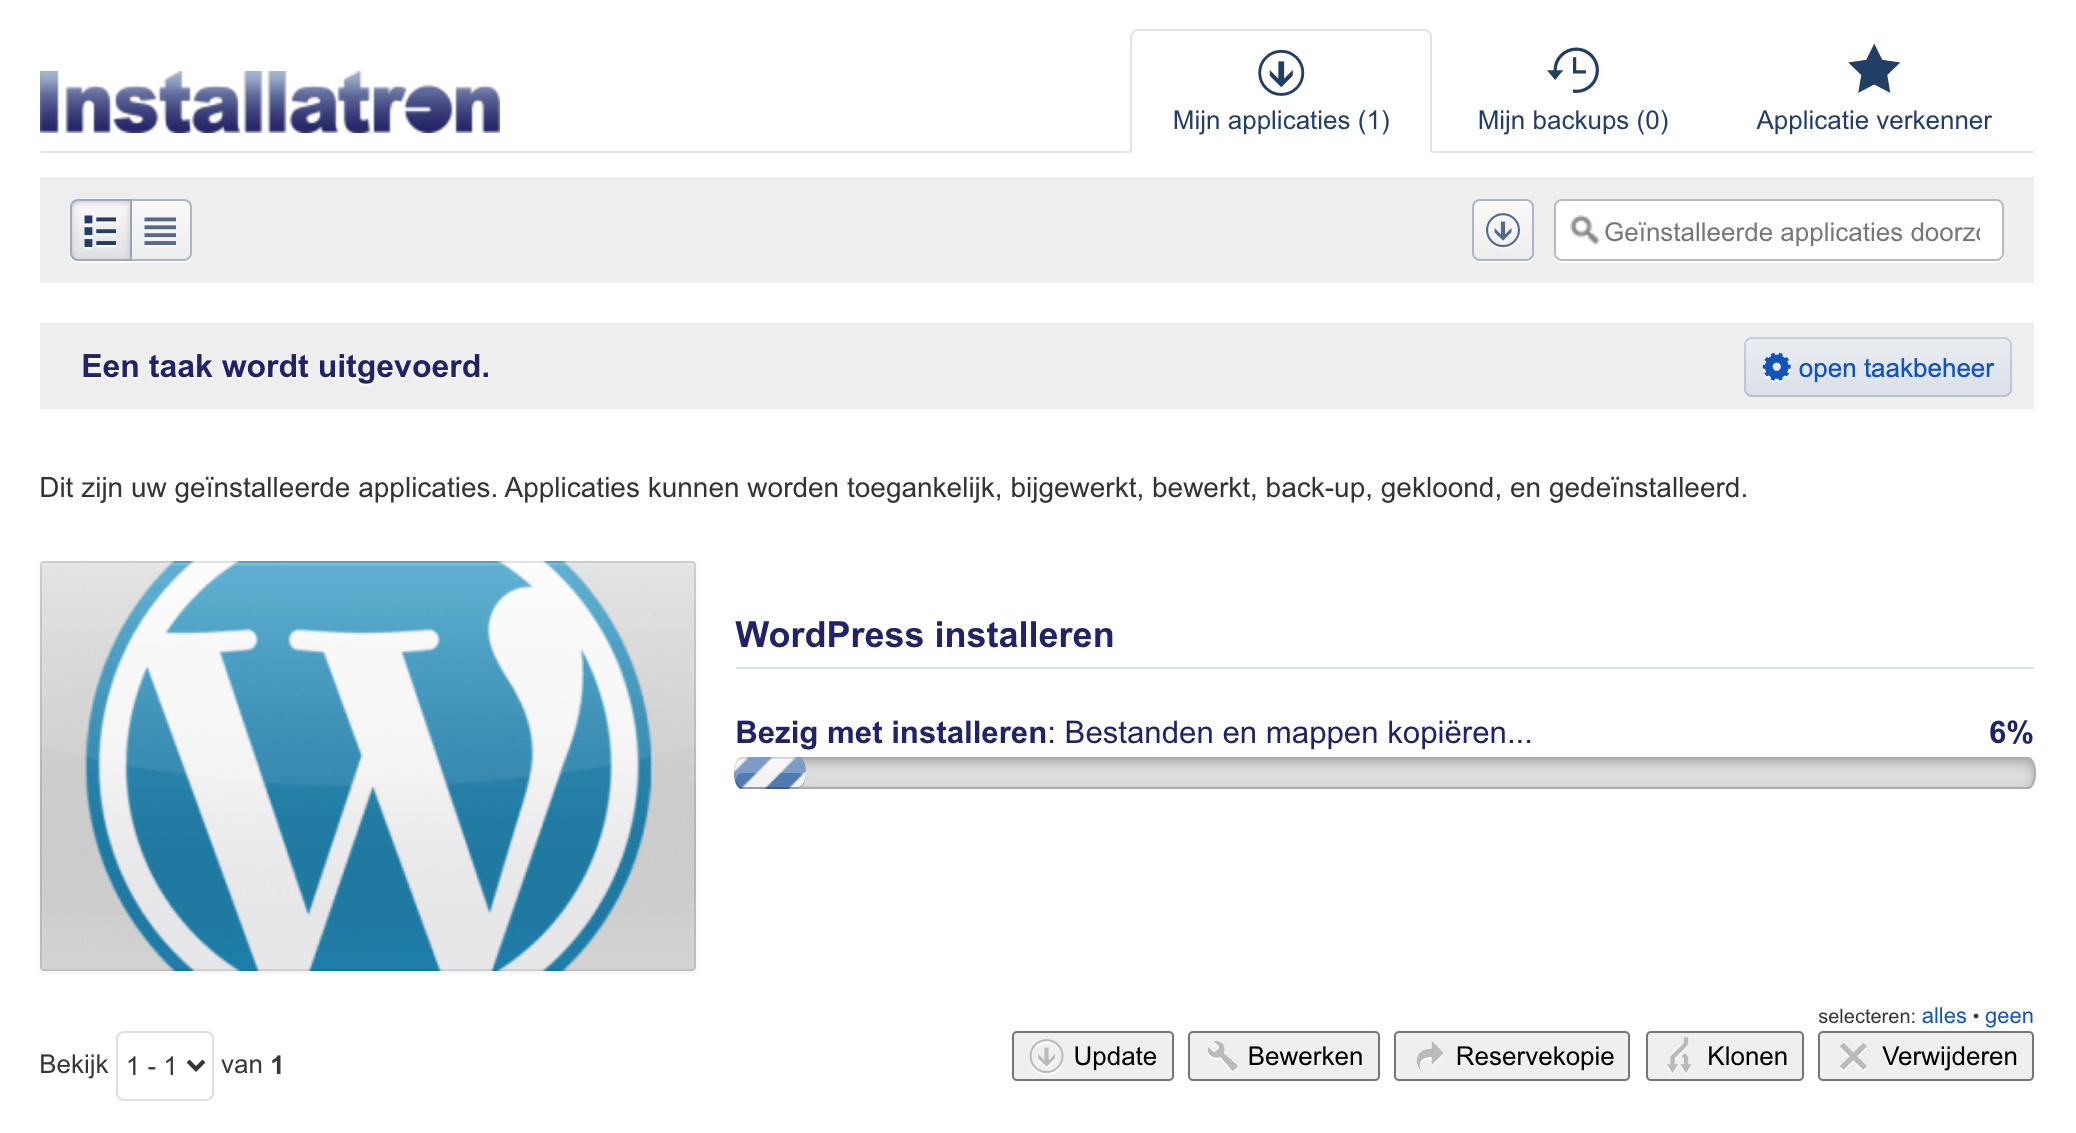 WordPress installeren installatieproces